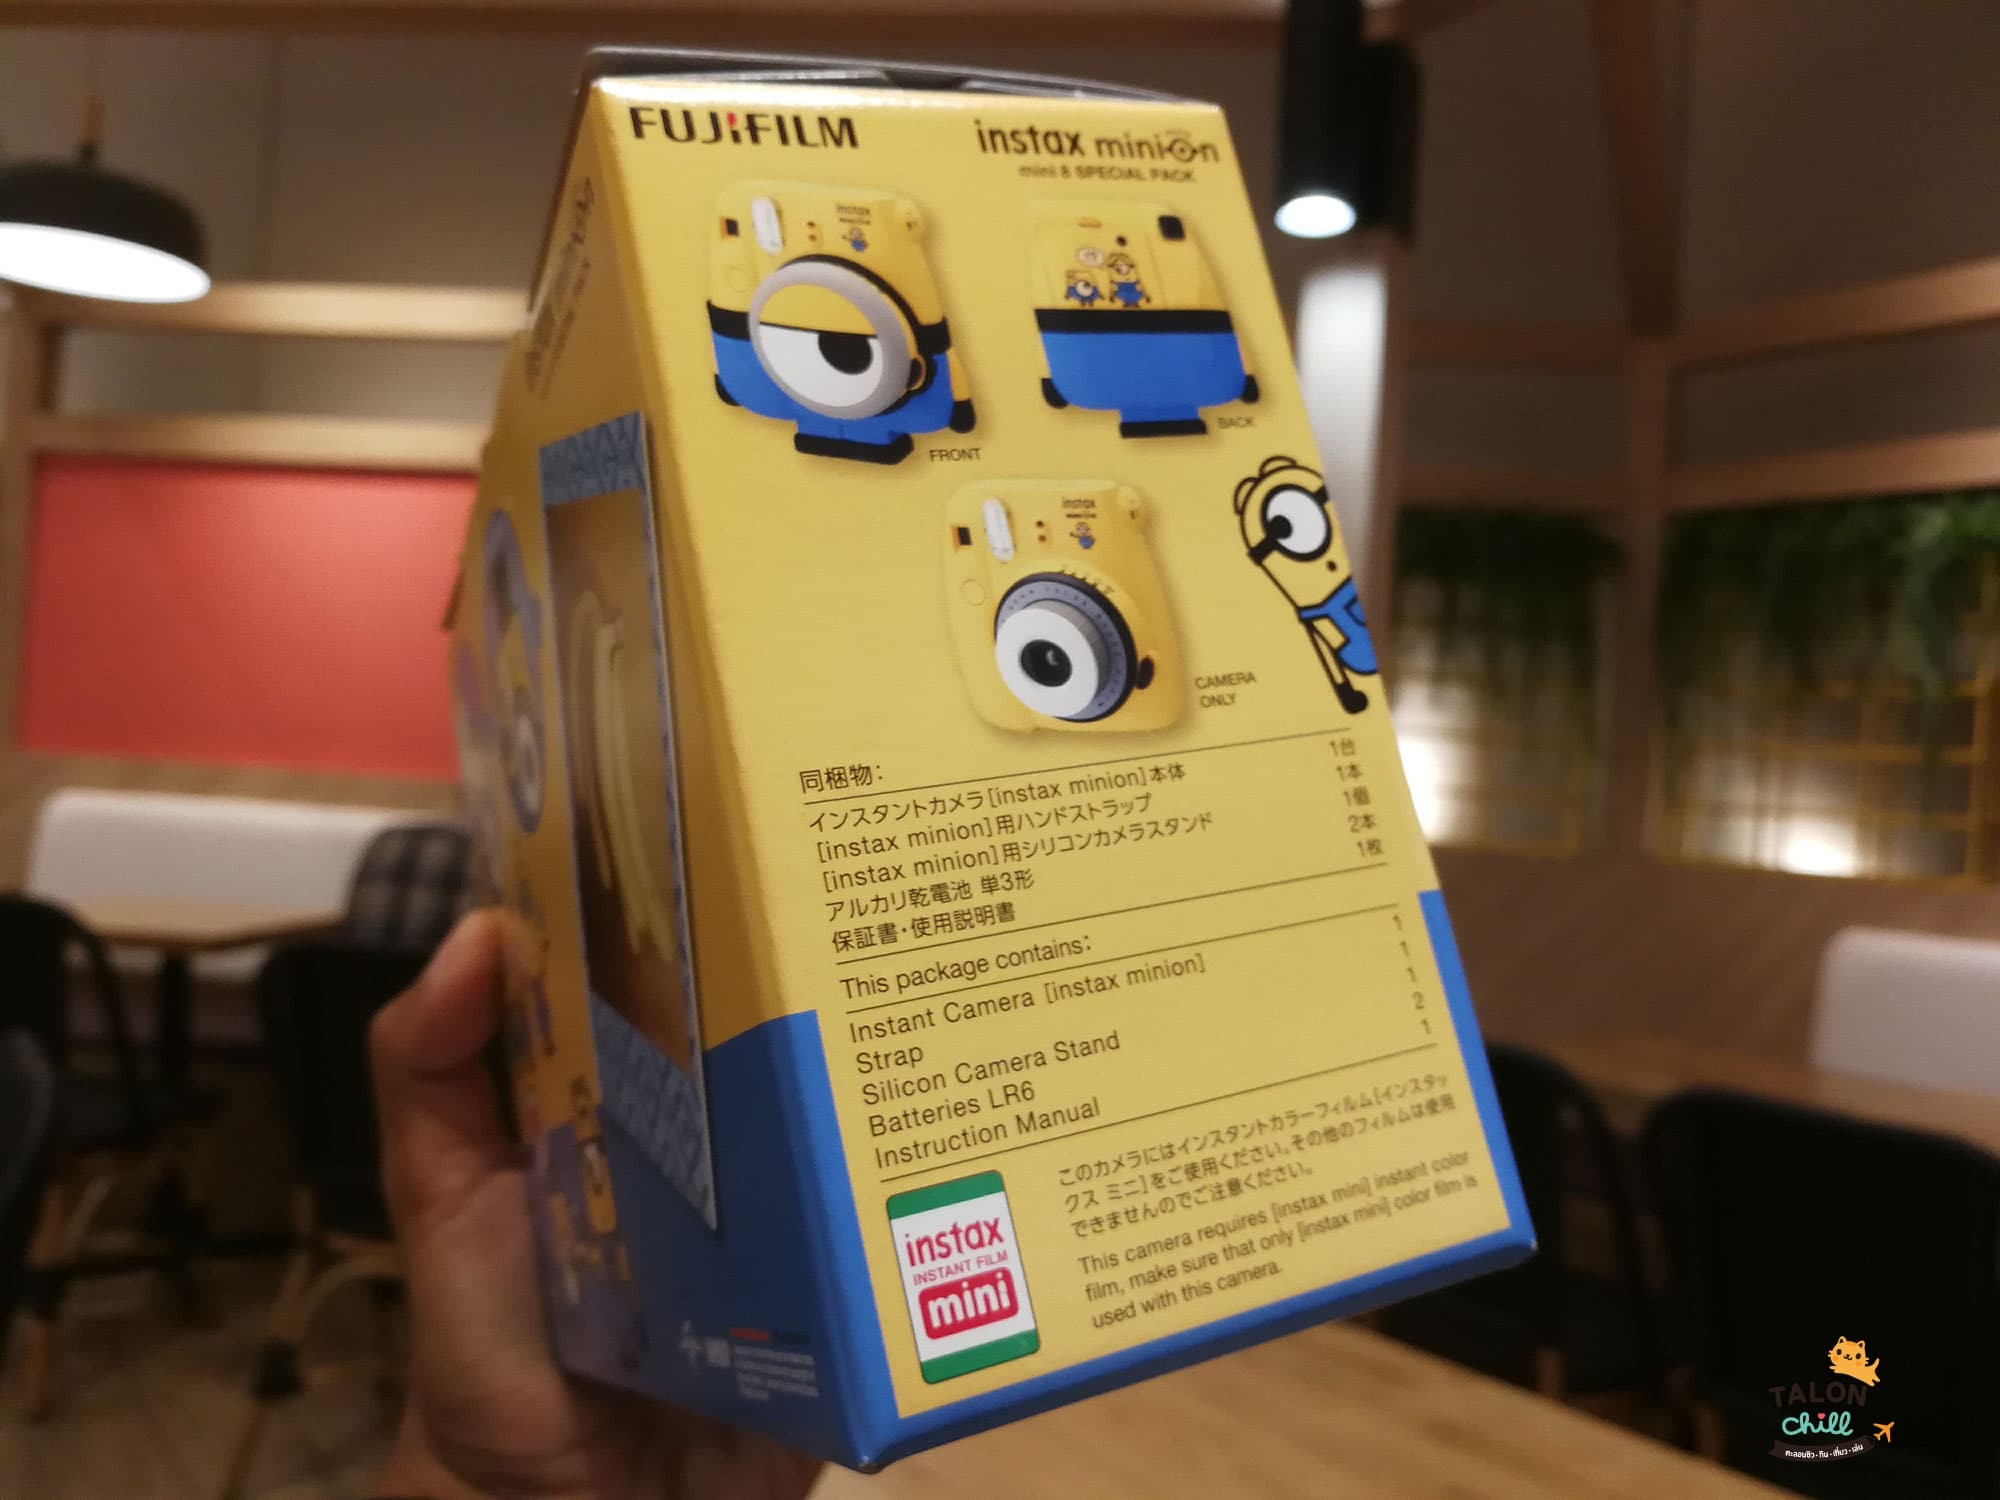 [แกะกล่องรีวิว] กล้องโพลารอยด์ลายมินเนี่ยน (Minion Instax mini 8 Instant Film Camera)